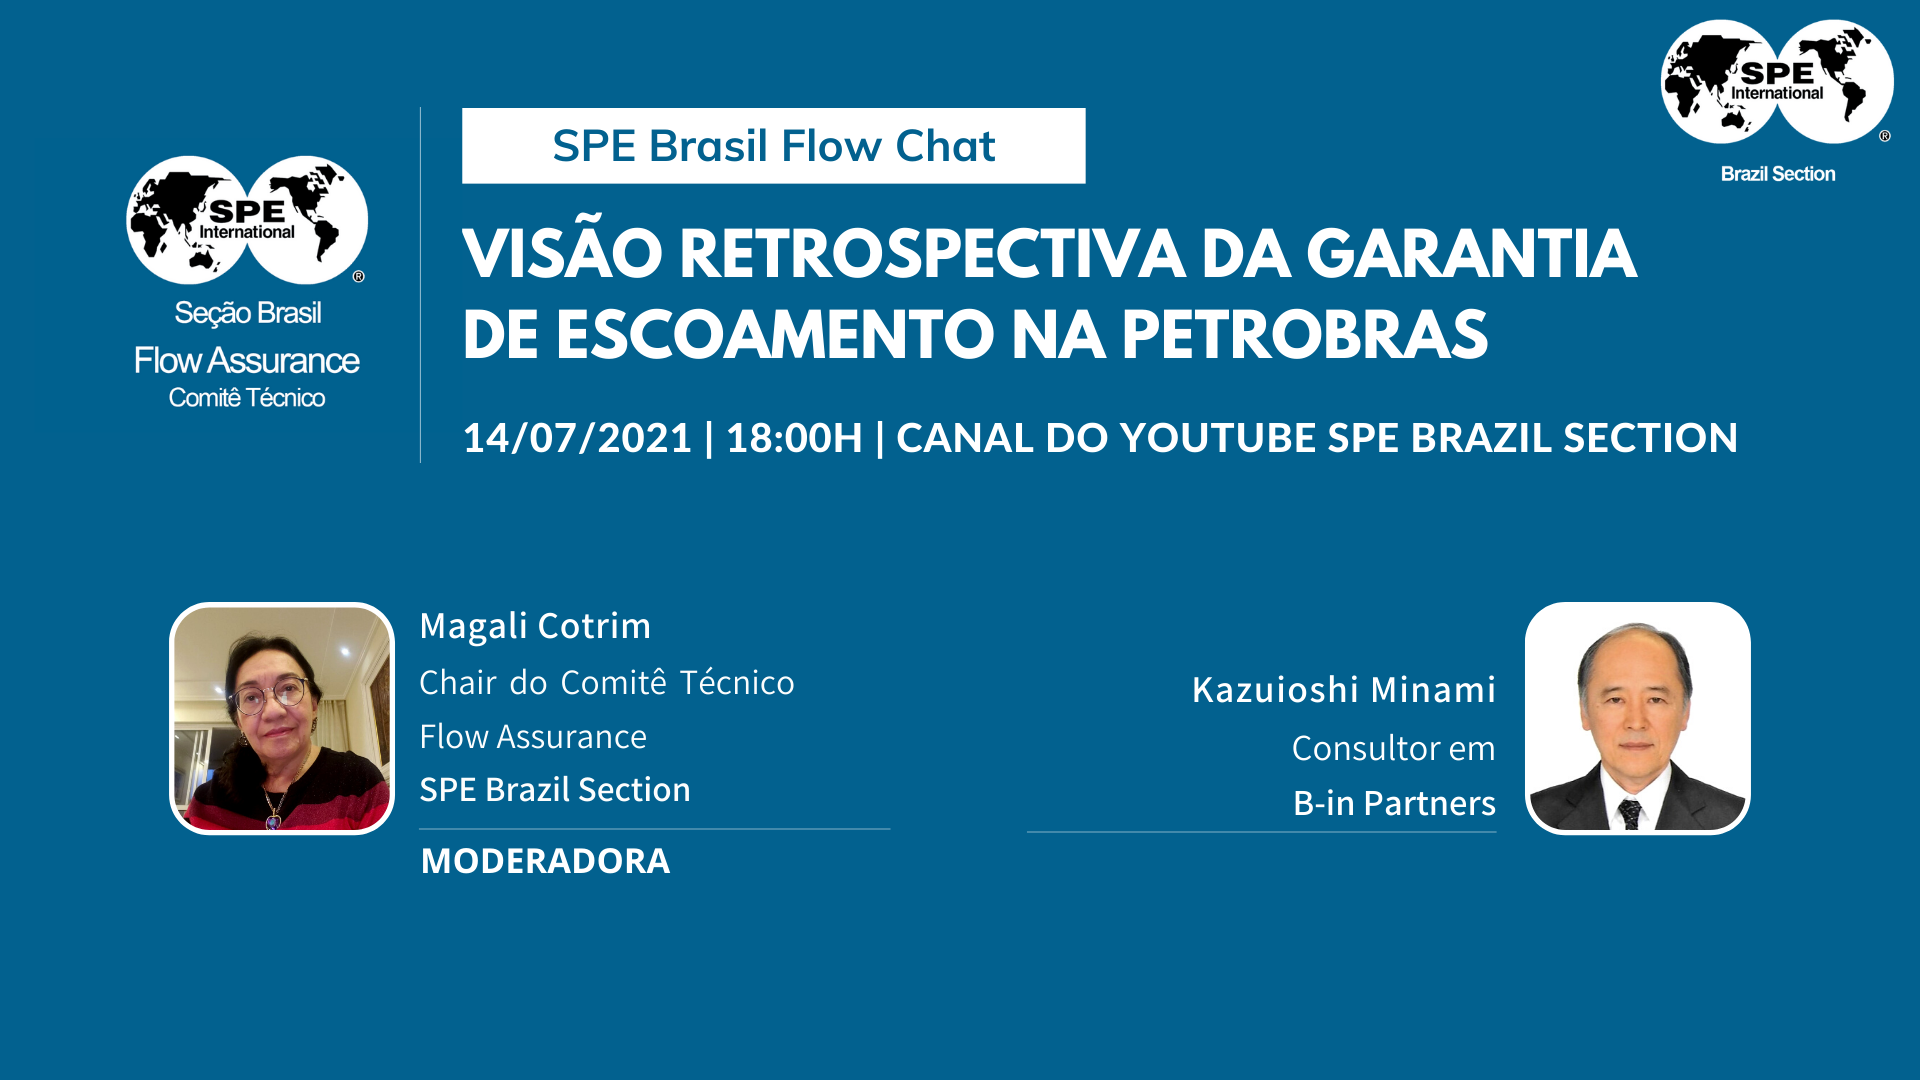 SPE Brasil Flow Chat #01: “Visão Retrospectiva da Garantia de Escoamento na Petrobras”